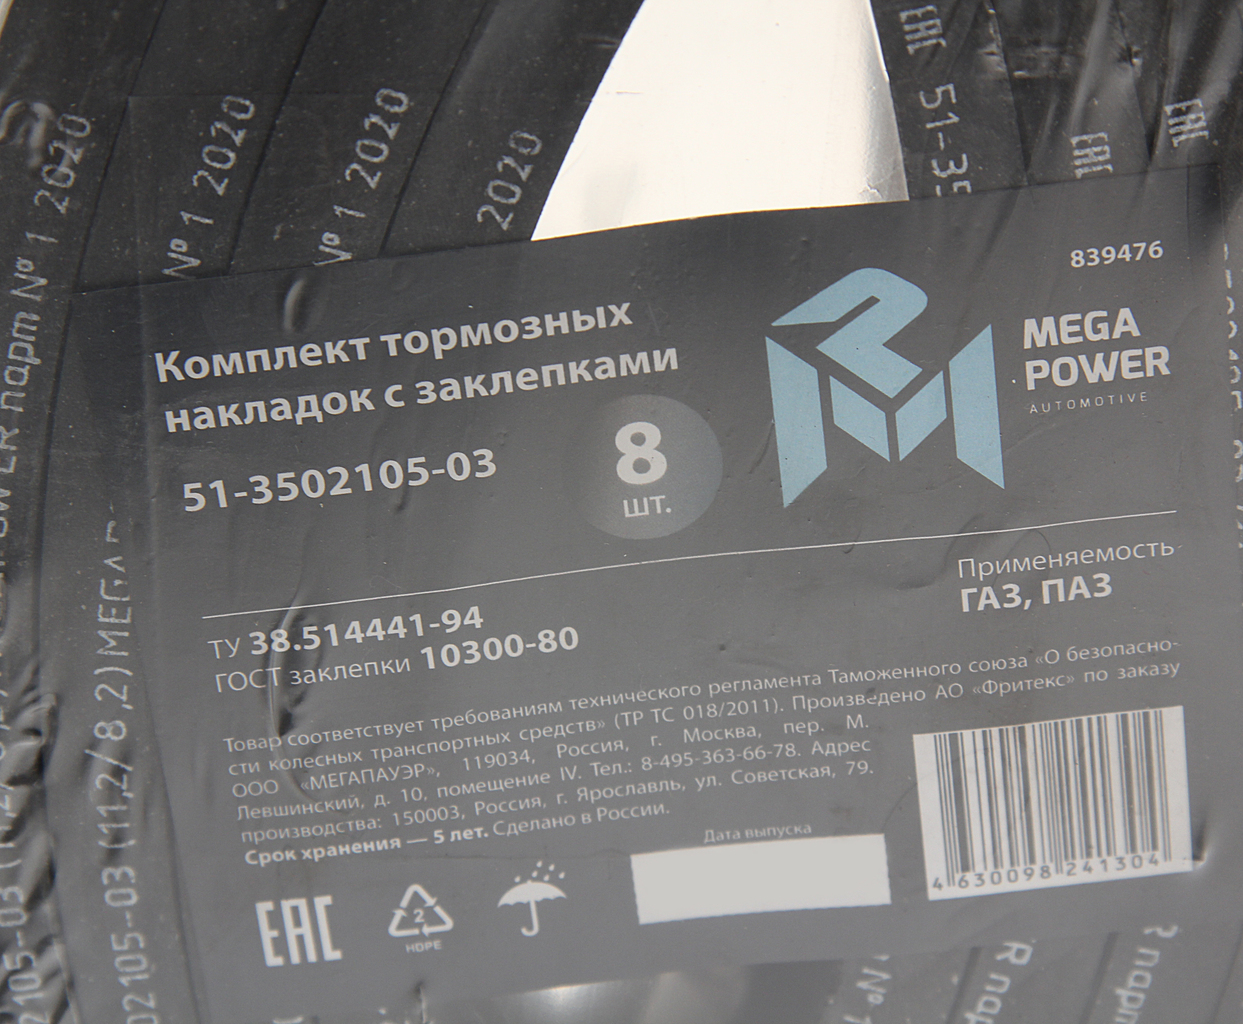 Накладка тормозной колодки ГАЗ передней сверленая расточен.комплект 8шт. с заклепками, 350-33-016, MEGAPOWER